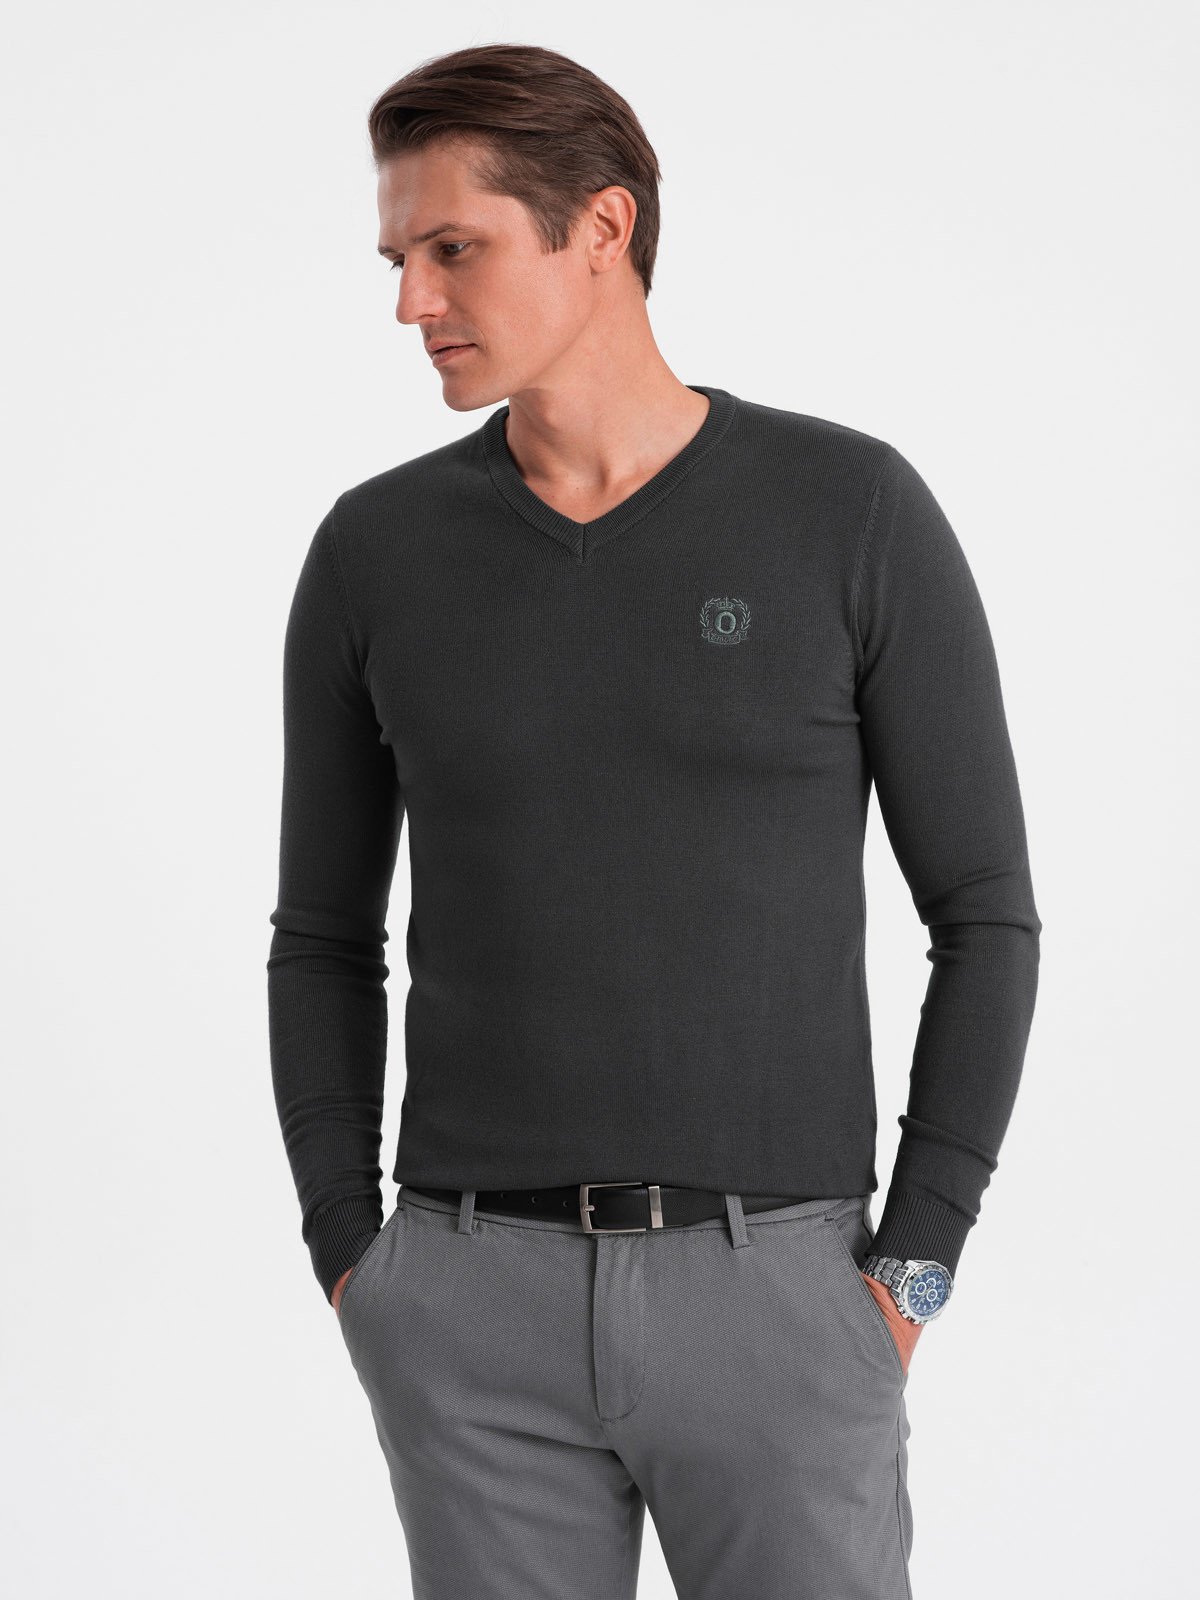 Elegant men's sweater with a heart neckline - graphite V17 OM-SWBS V17 OM-SWBS - 0107